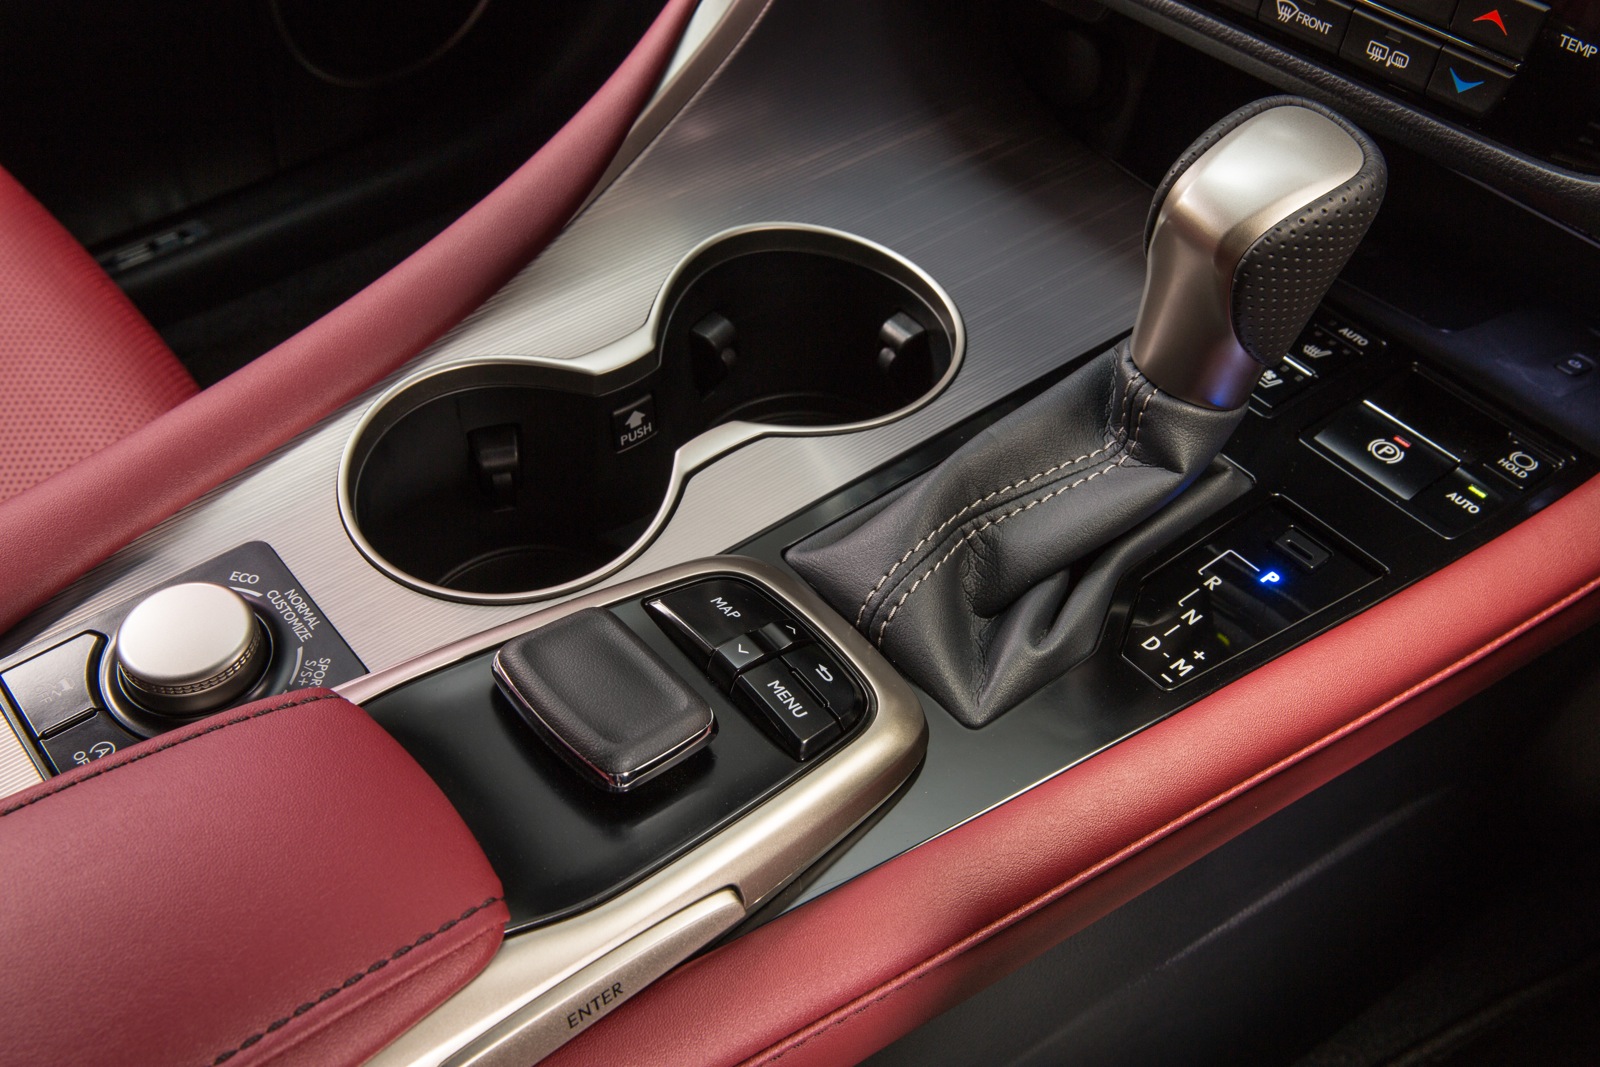 2016 Lexus RX Review - Photos | CarAdvice